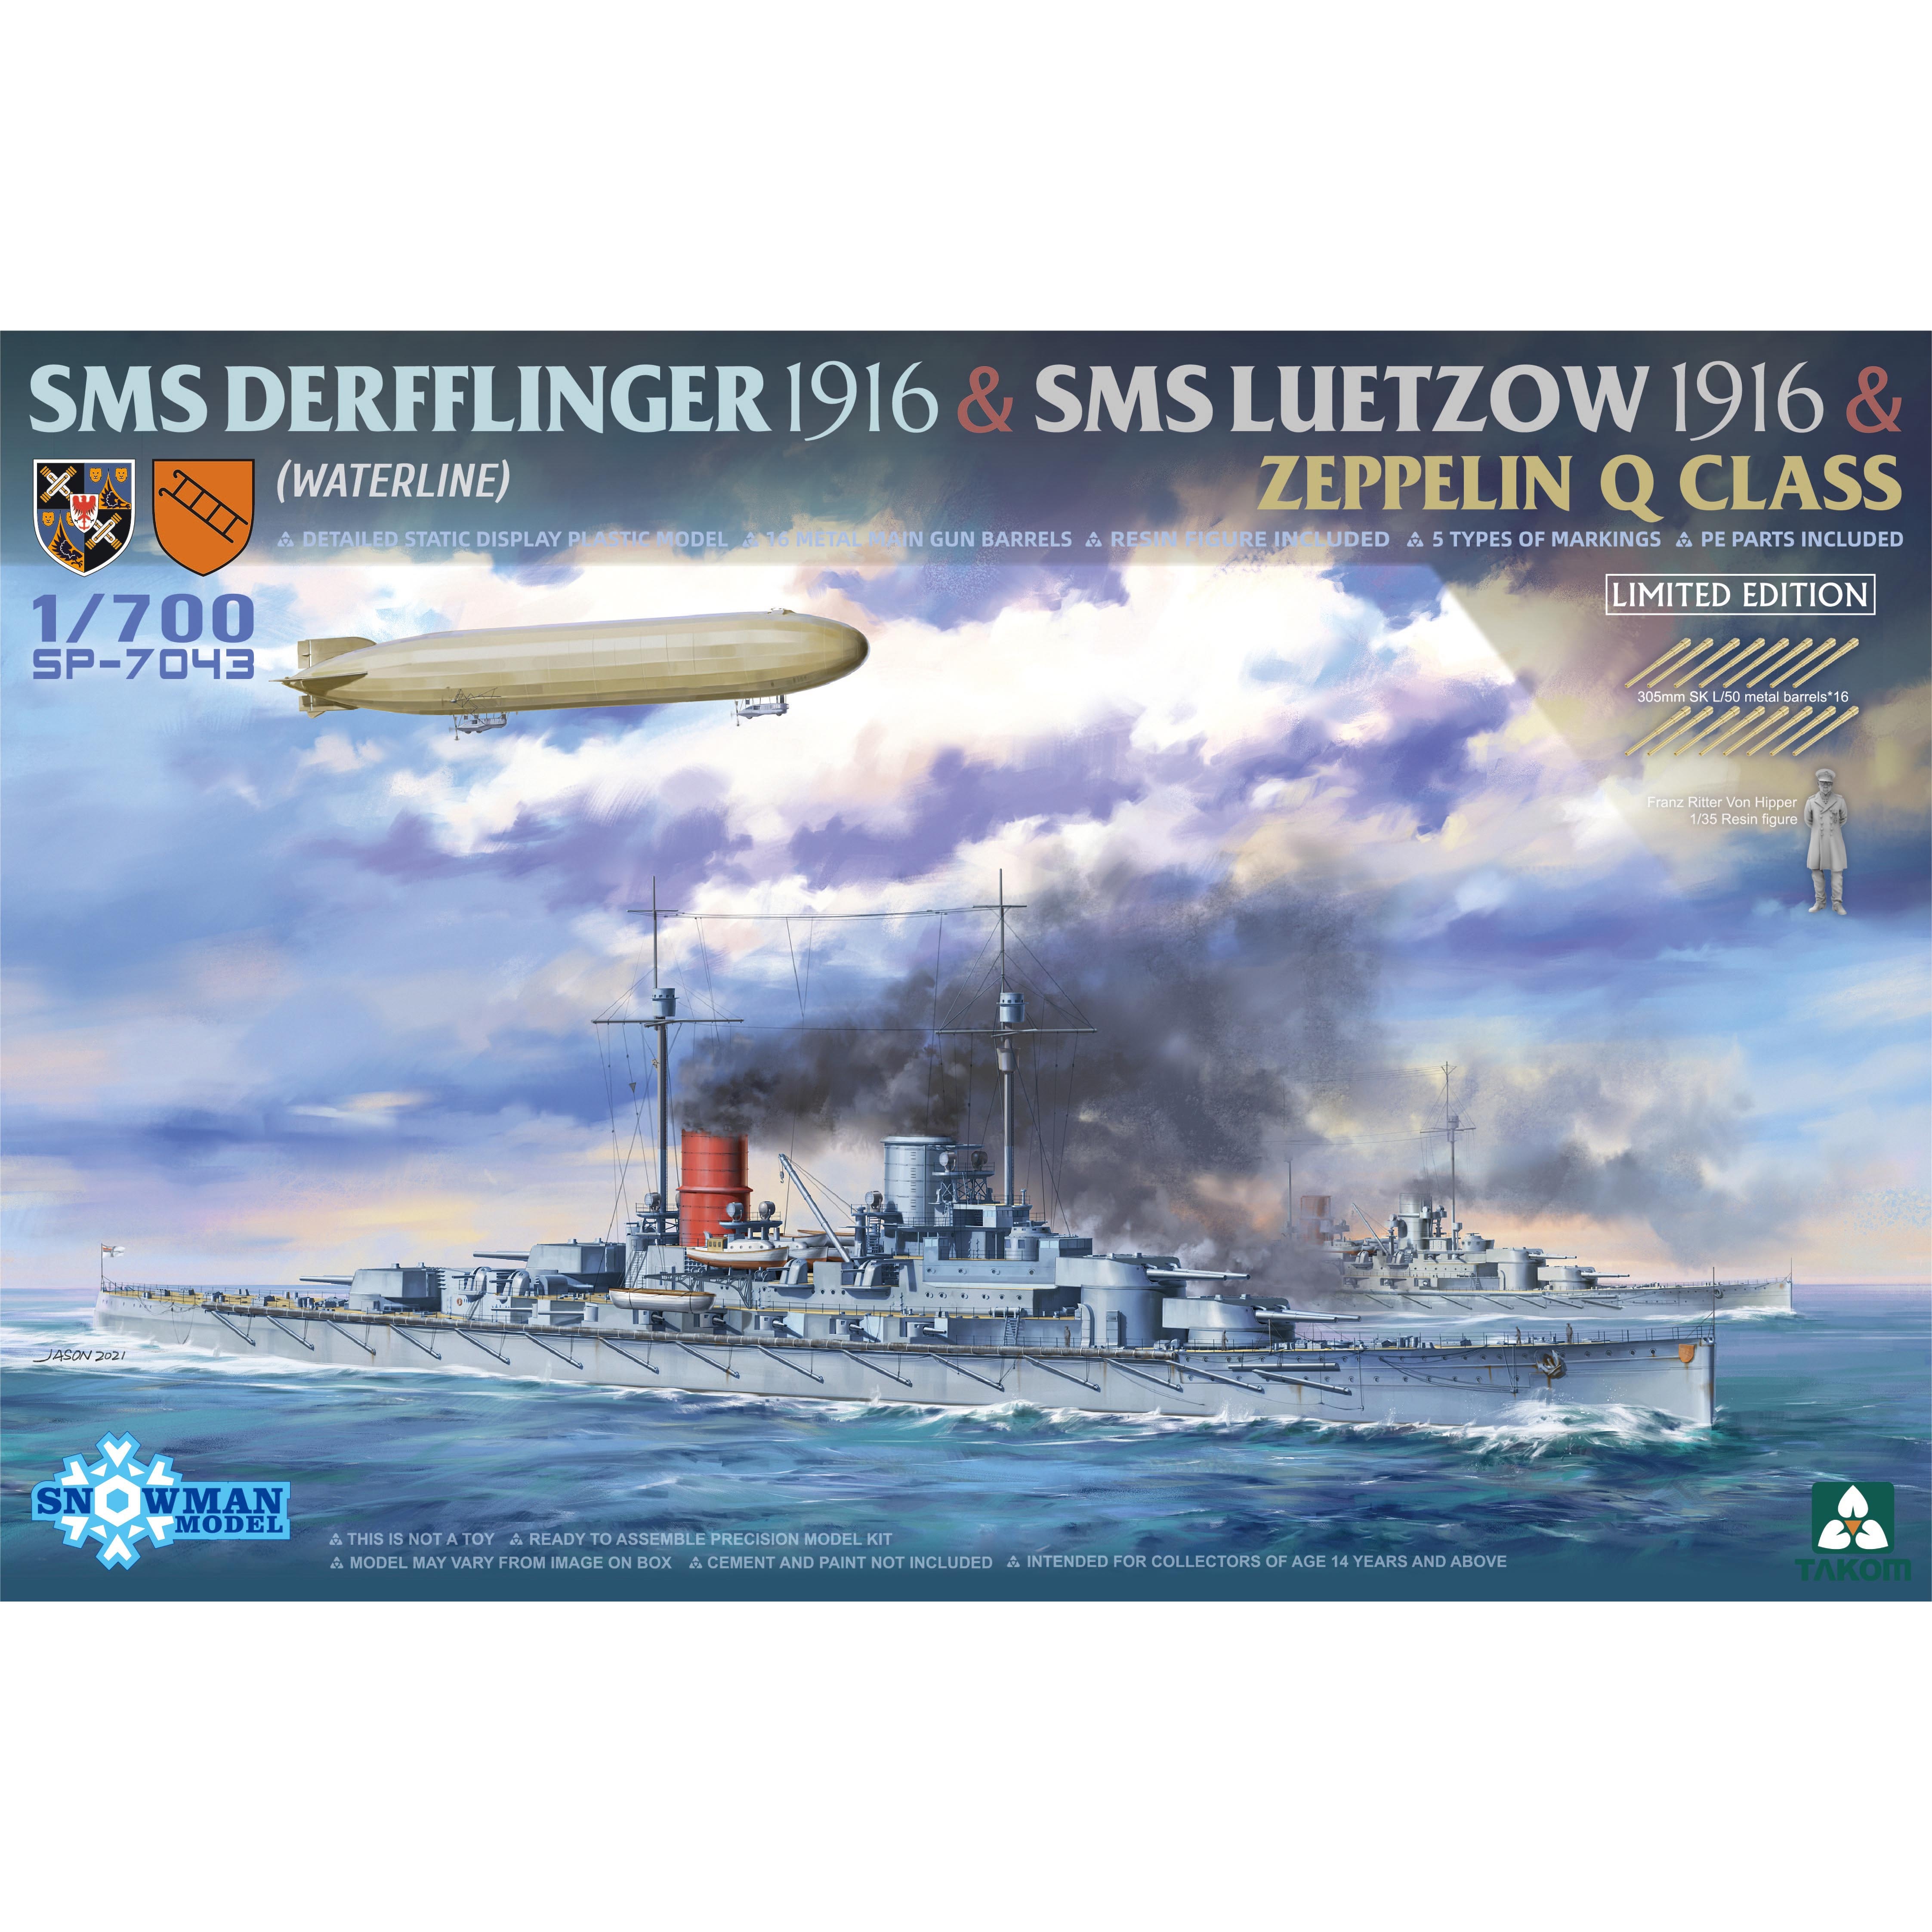 SP-7043 Takom 1/700 Крейсер SMS Derfflinger 1916 + крейсер SMS Lützow 1916 + дирижабль Zeppelin Q-class